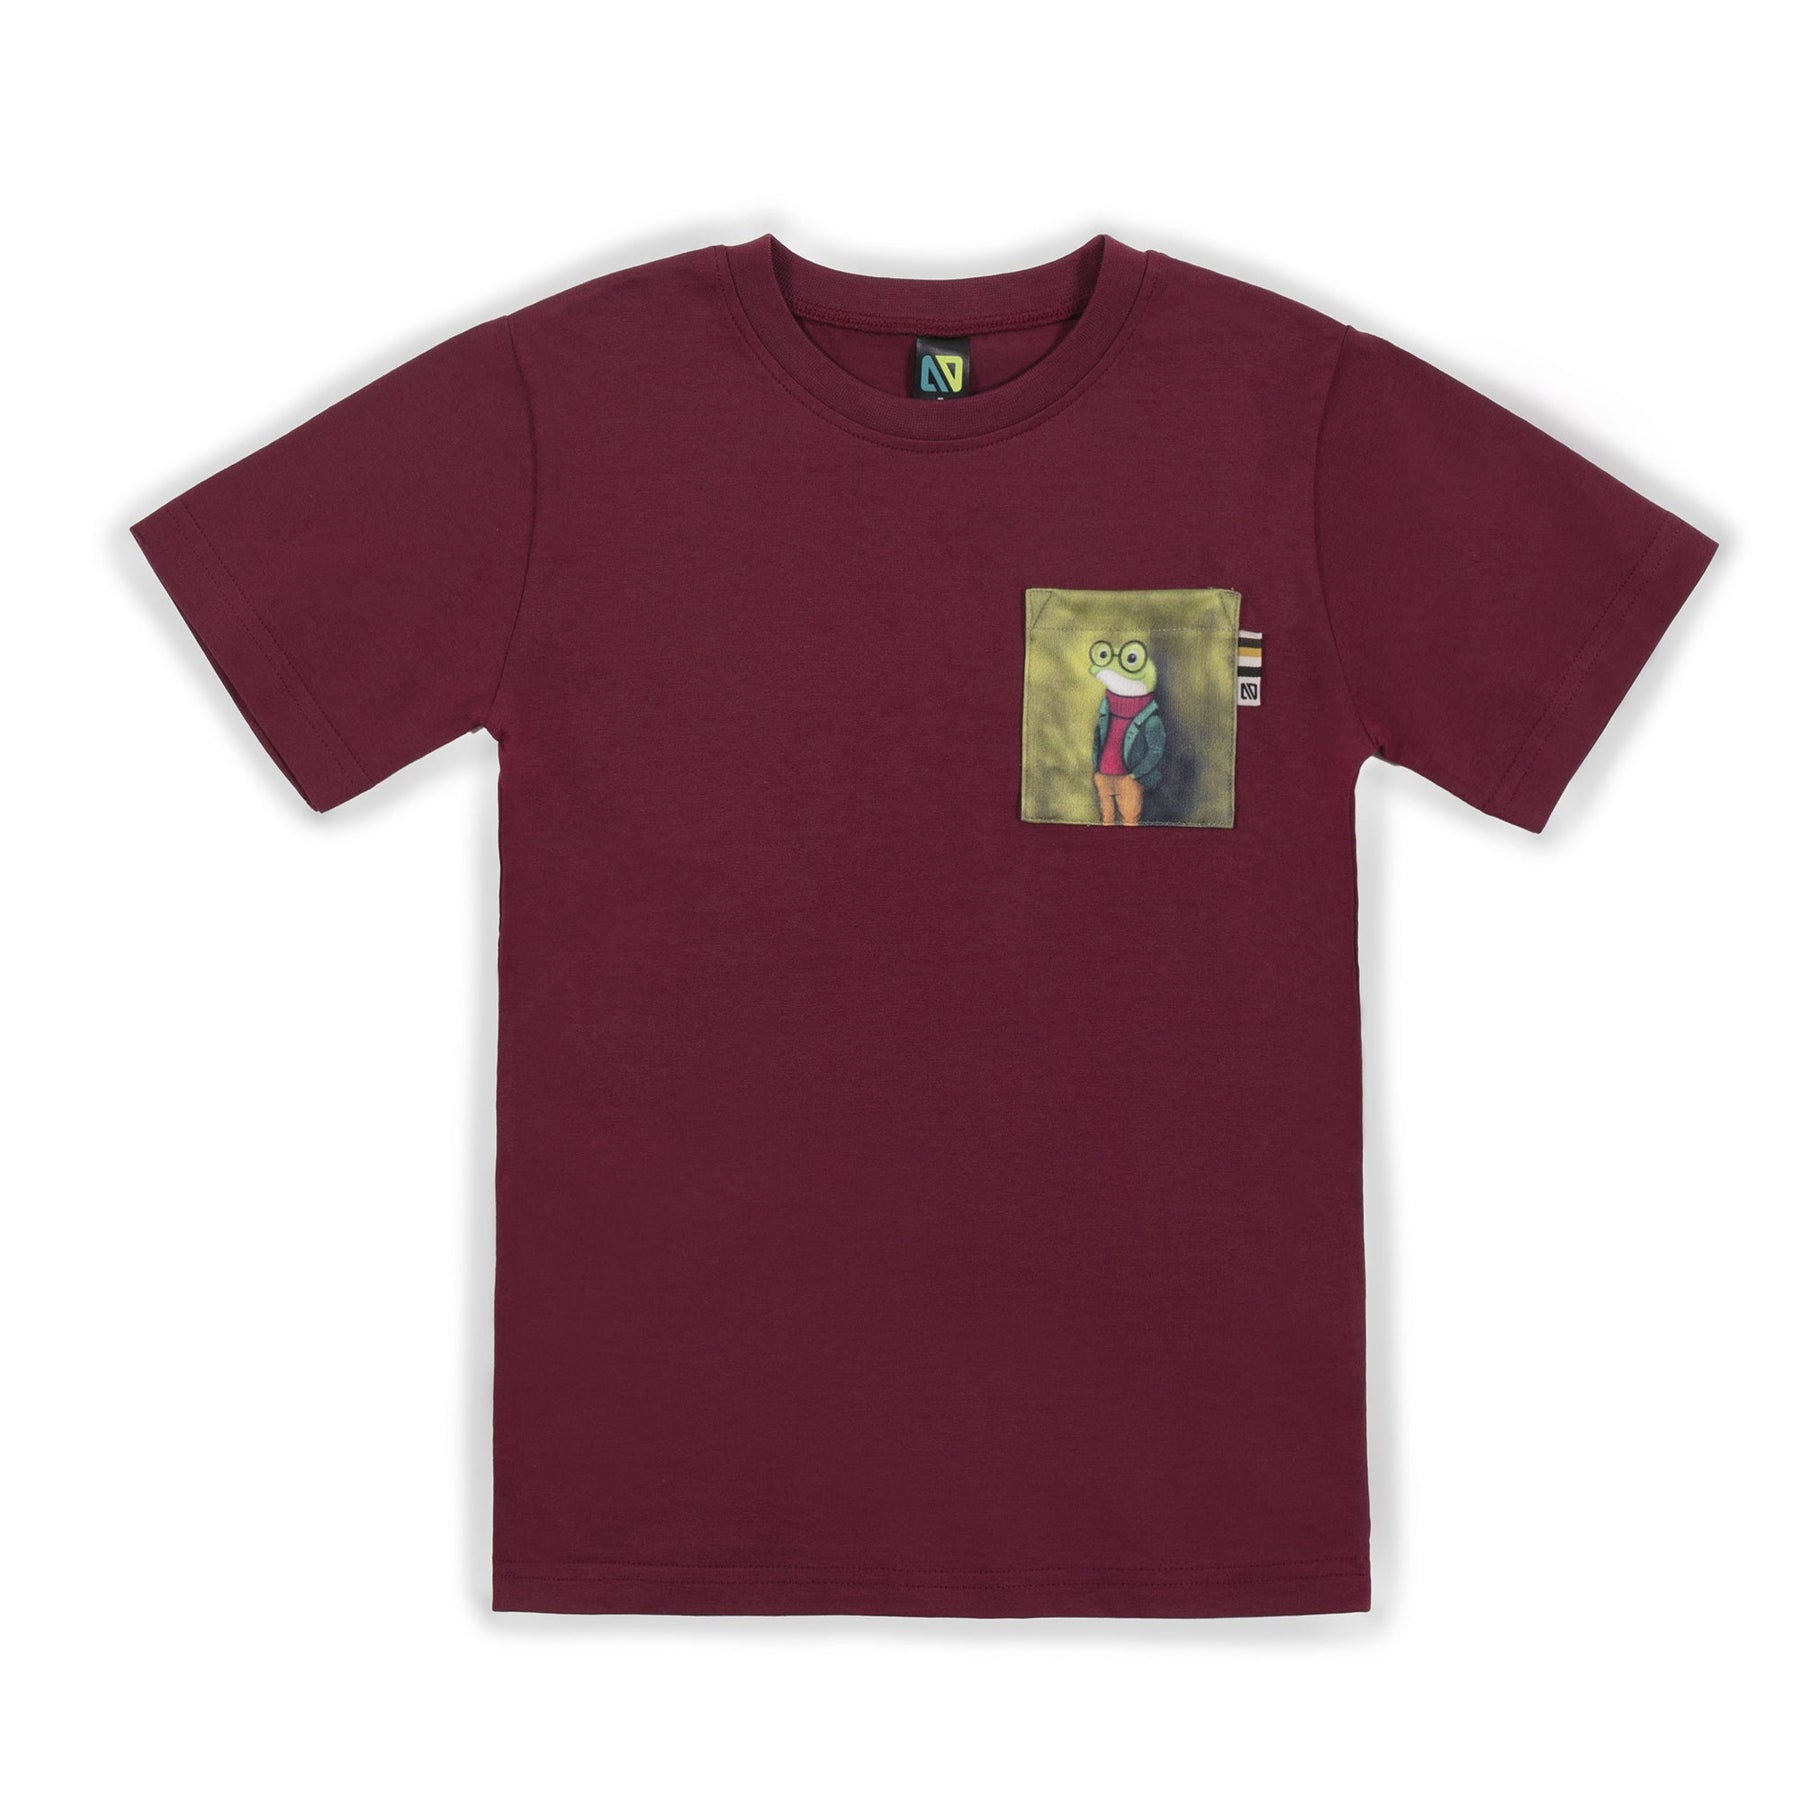 T-shirt pour enfant garçon par Nanö | F23PR01-07 Bordeaux | Boutique Flos, vêtements mode pour bébés et enfants